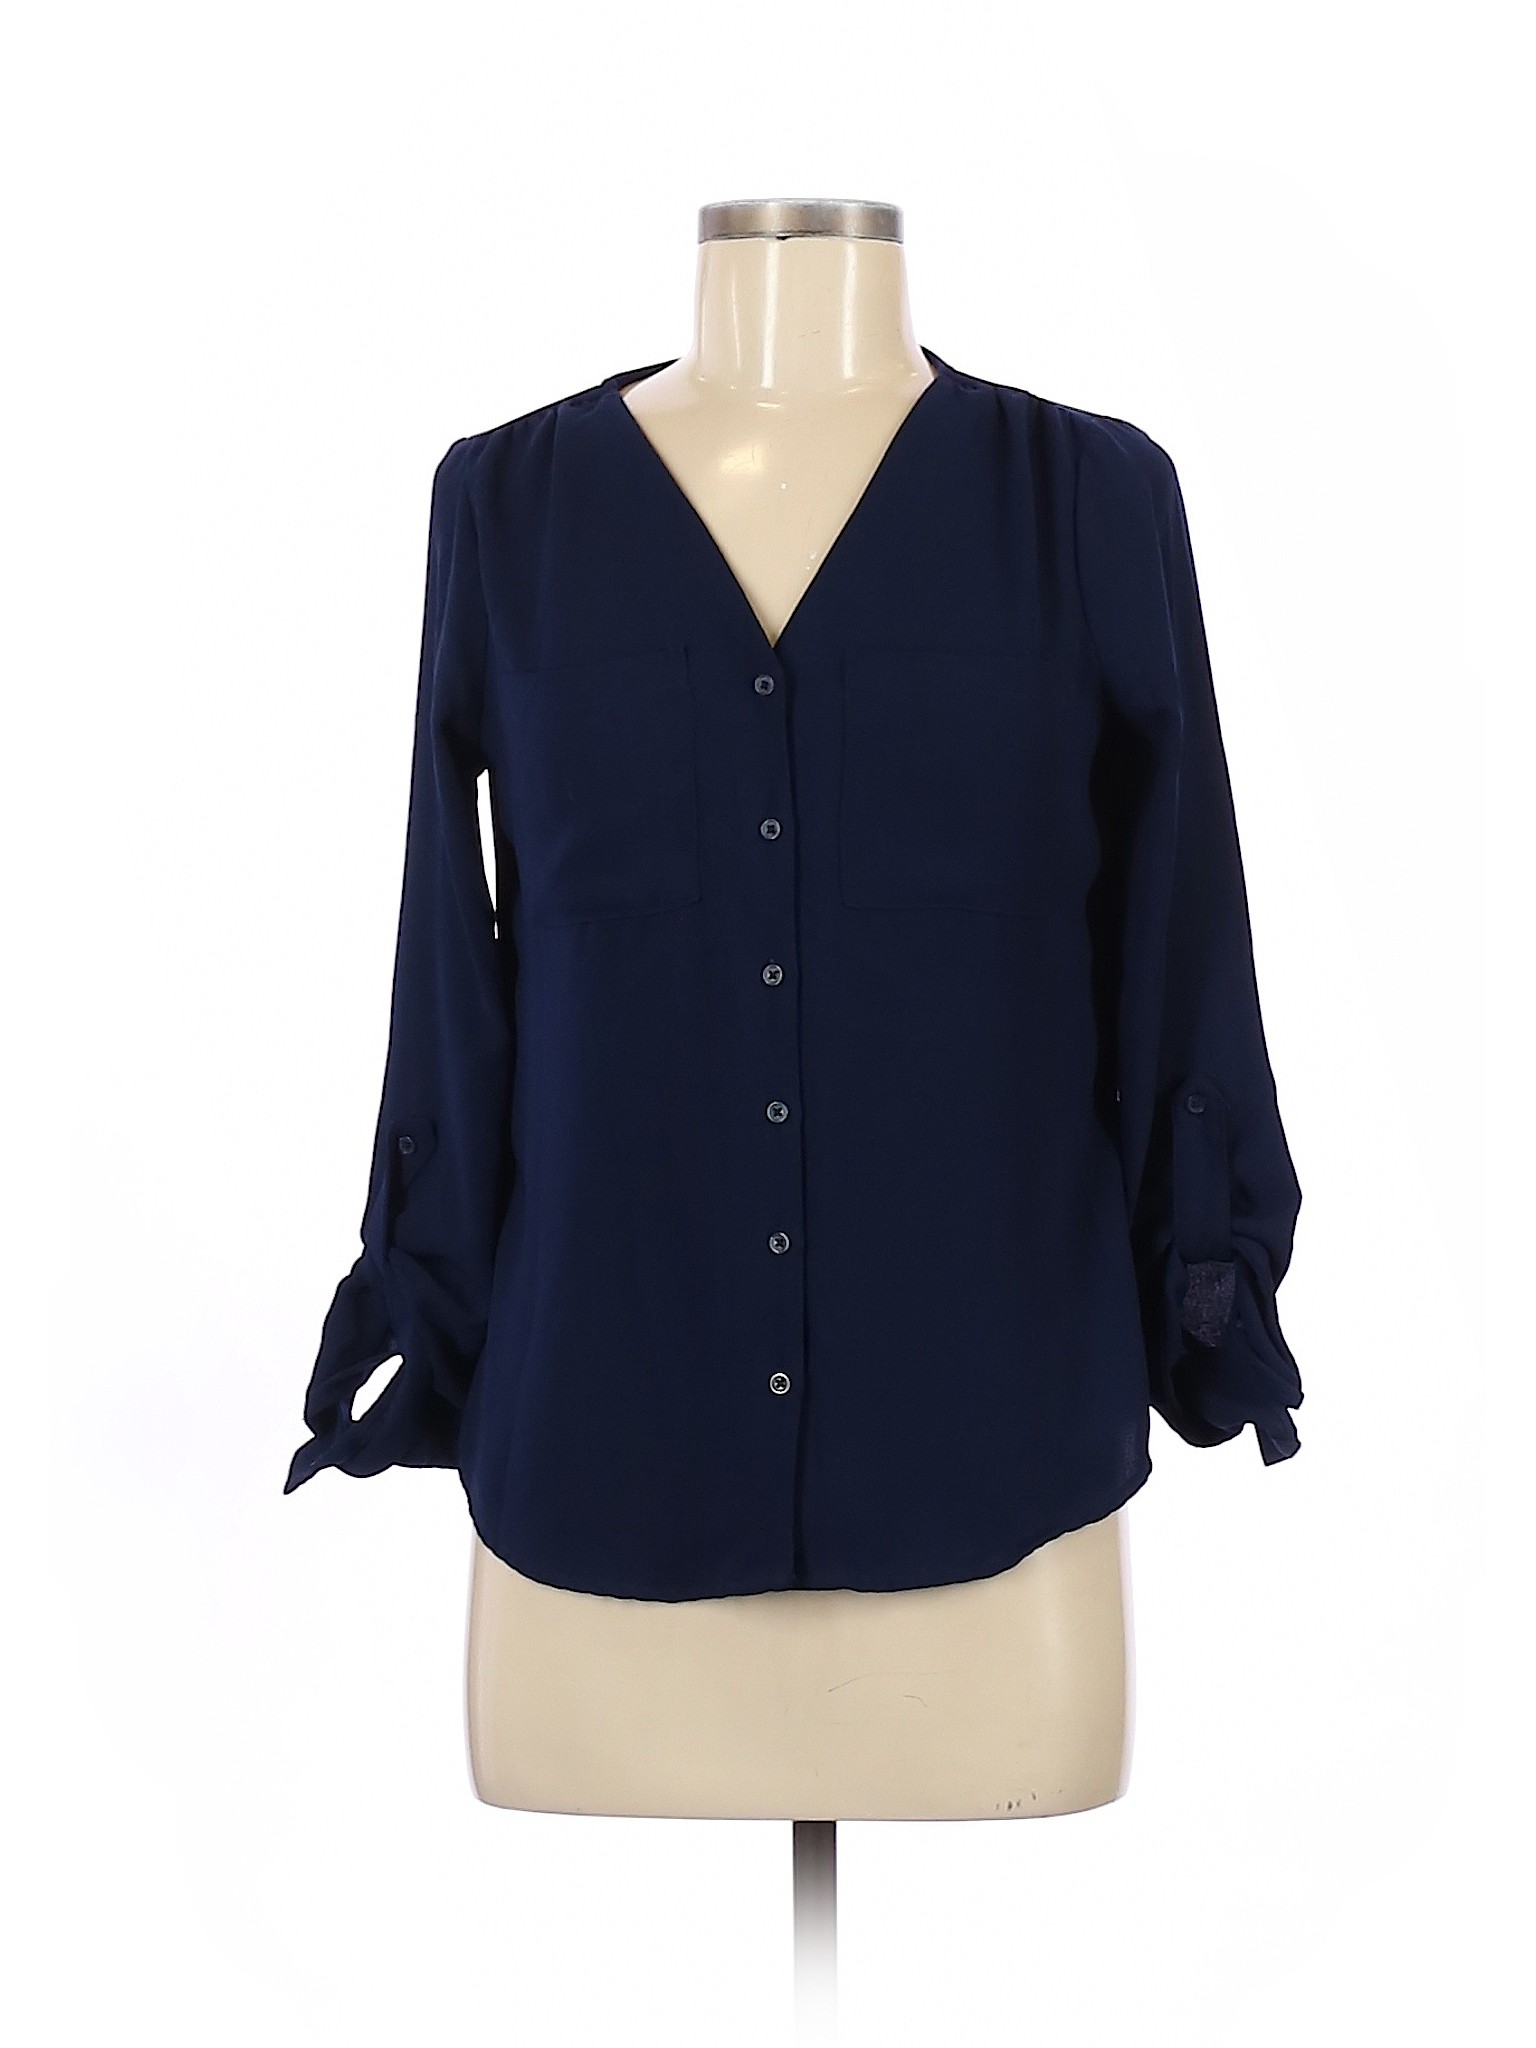 Apt. 9 Women Blue Long Sleeve Blouse XS | eBay